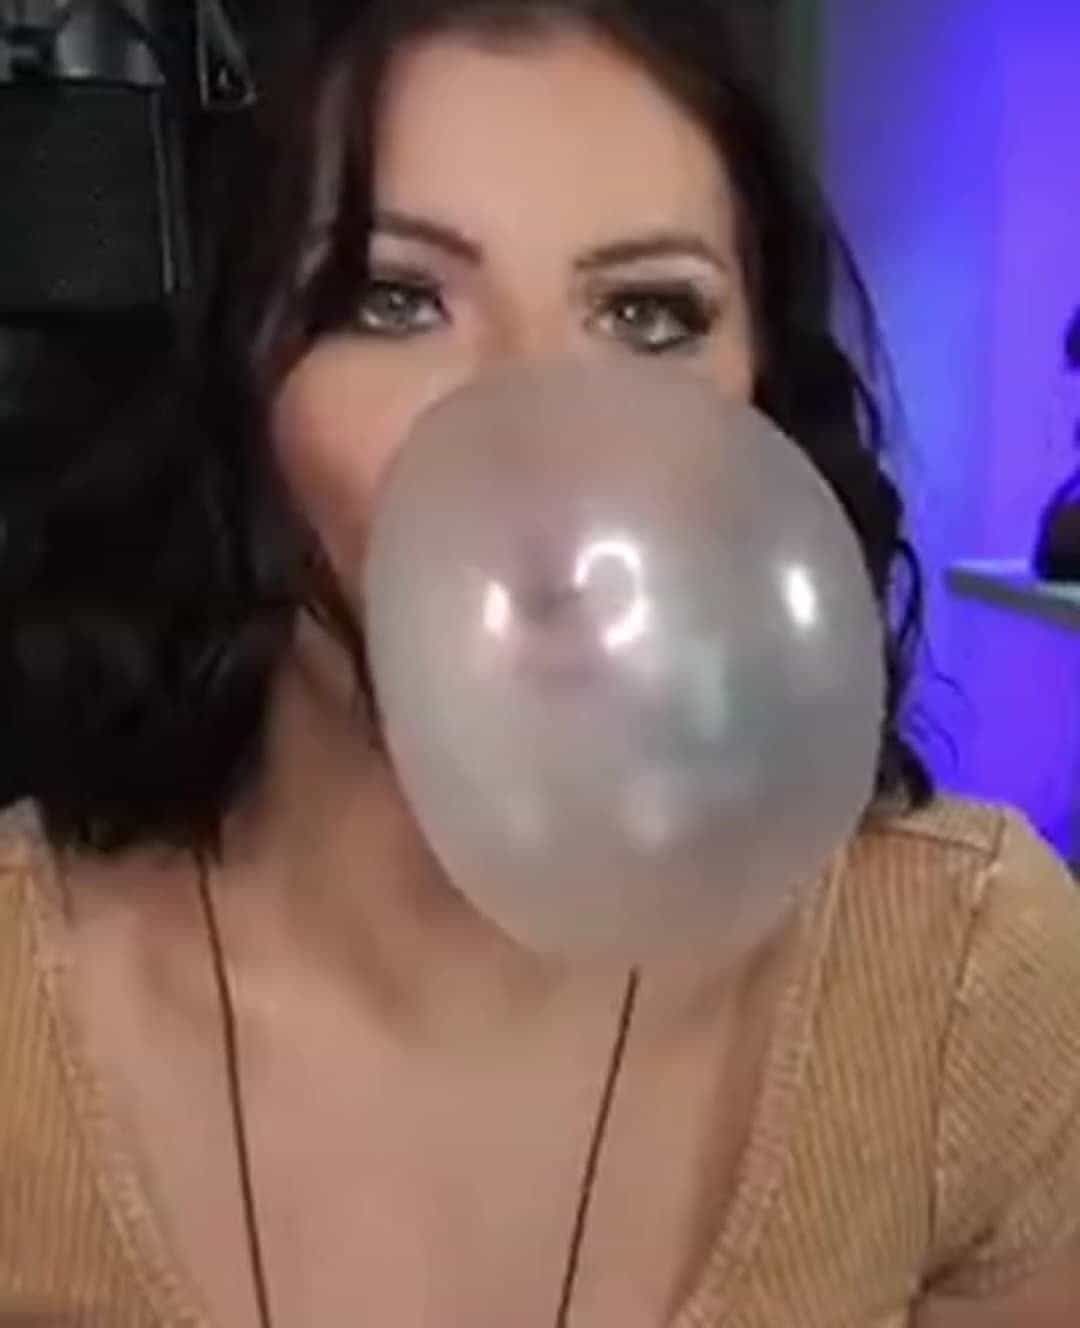 She loves bubblegum 